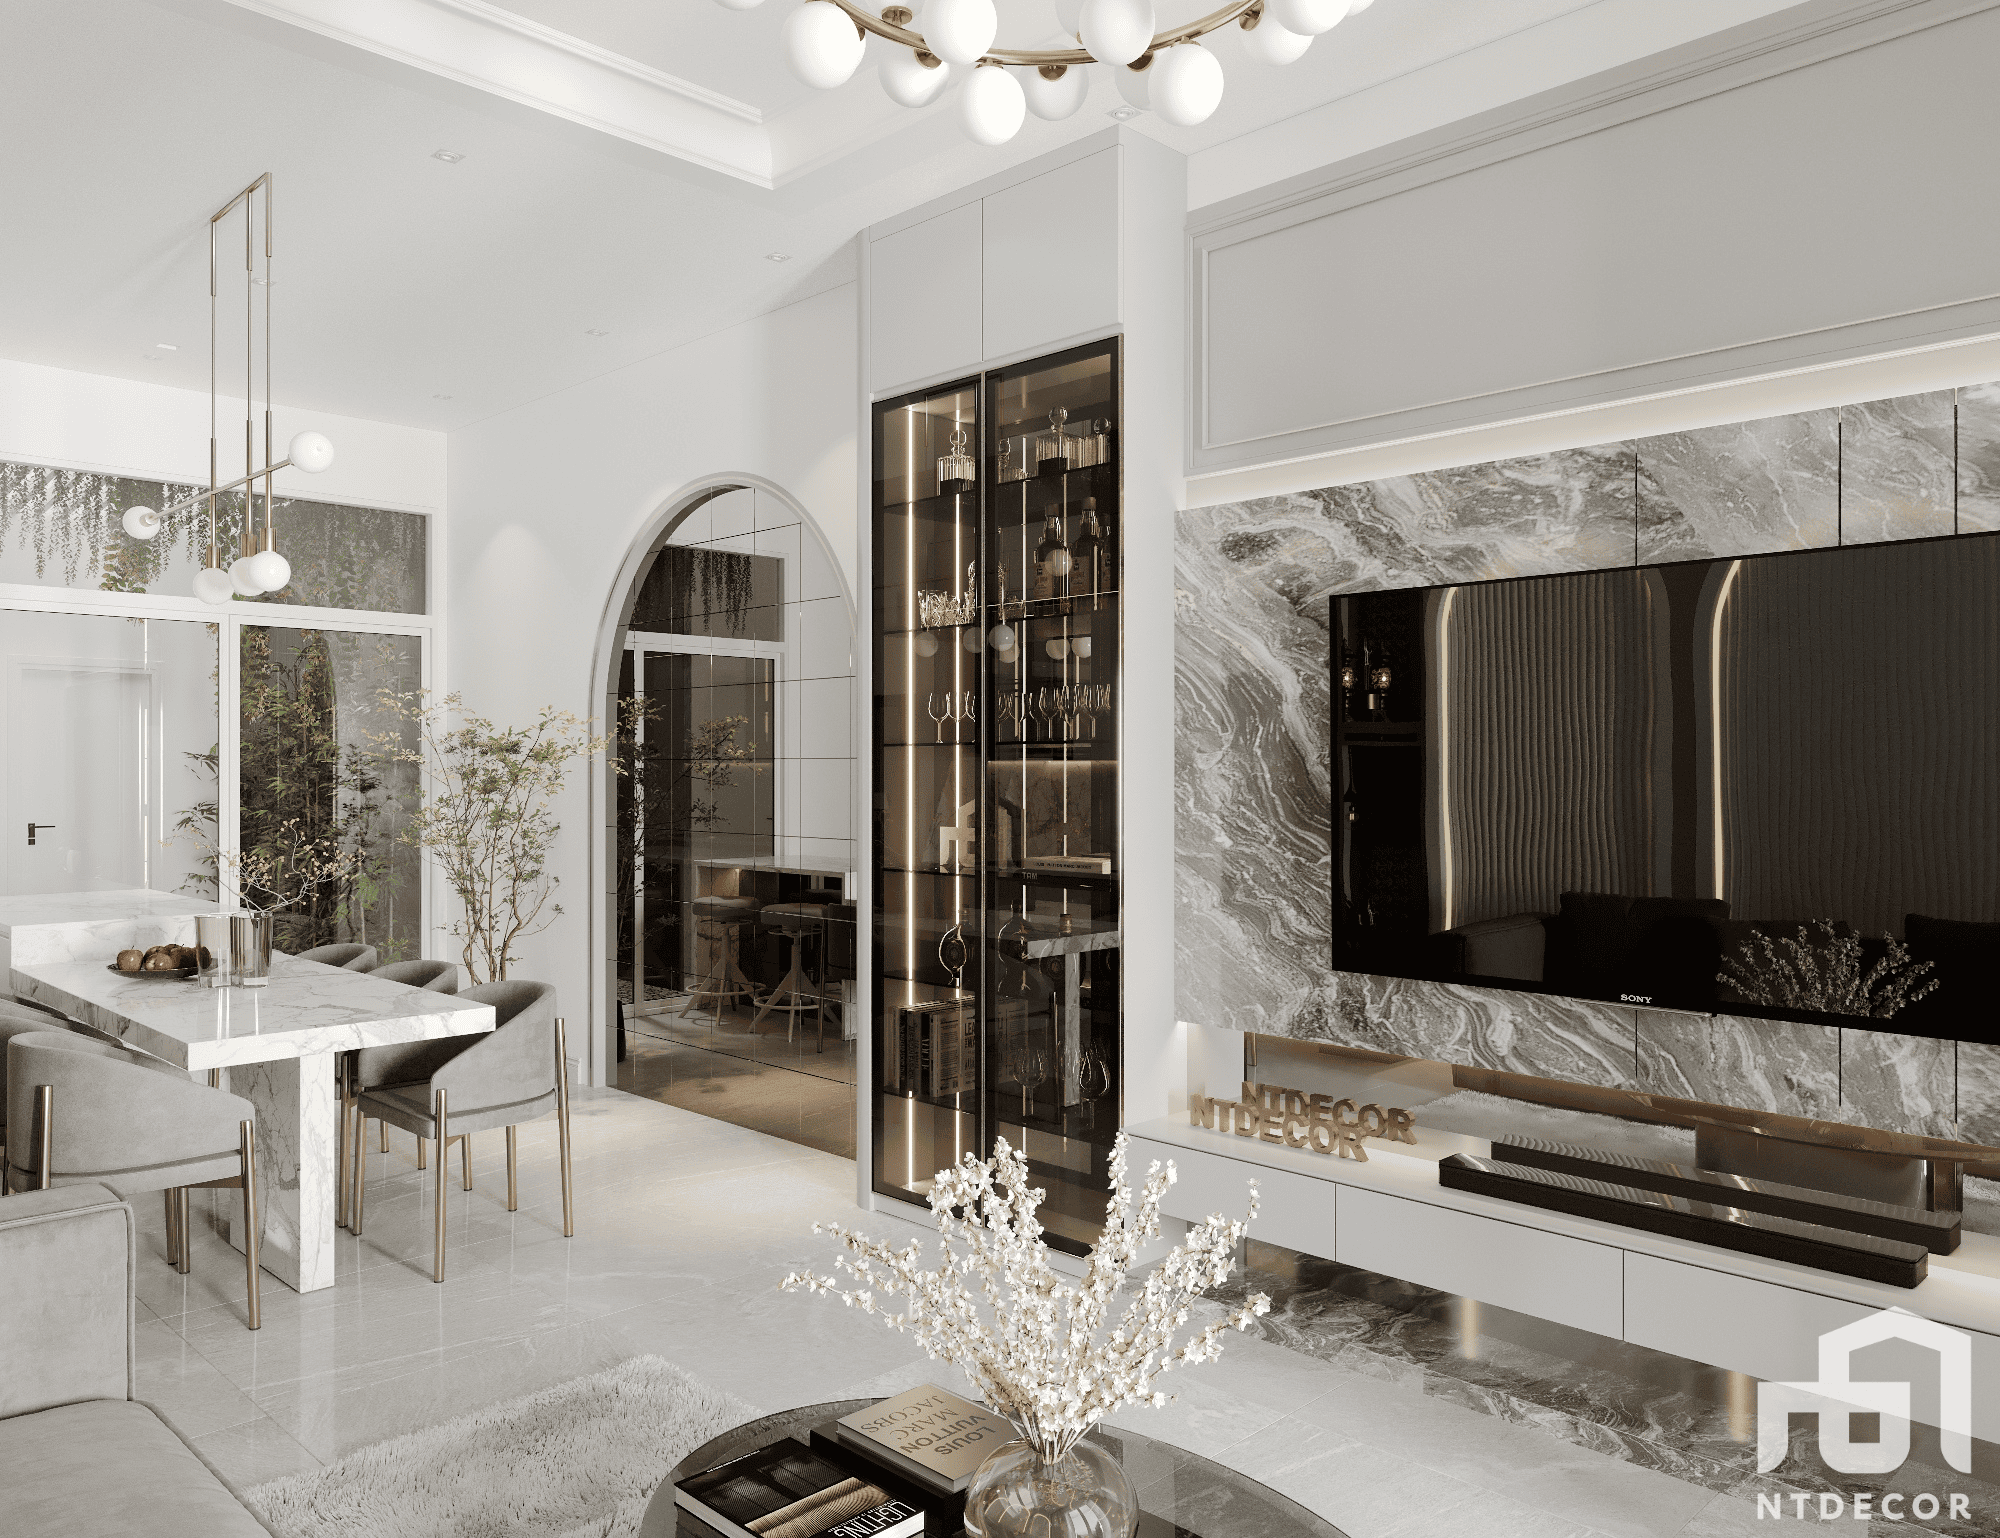 Living Room 3D Design of Vi's House Interior Design Modern Style | NTDecor